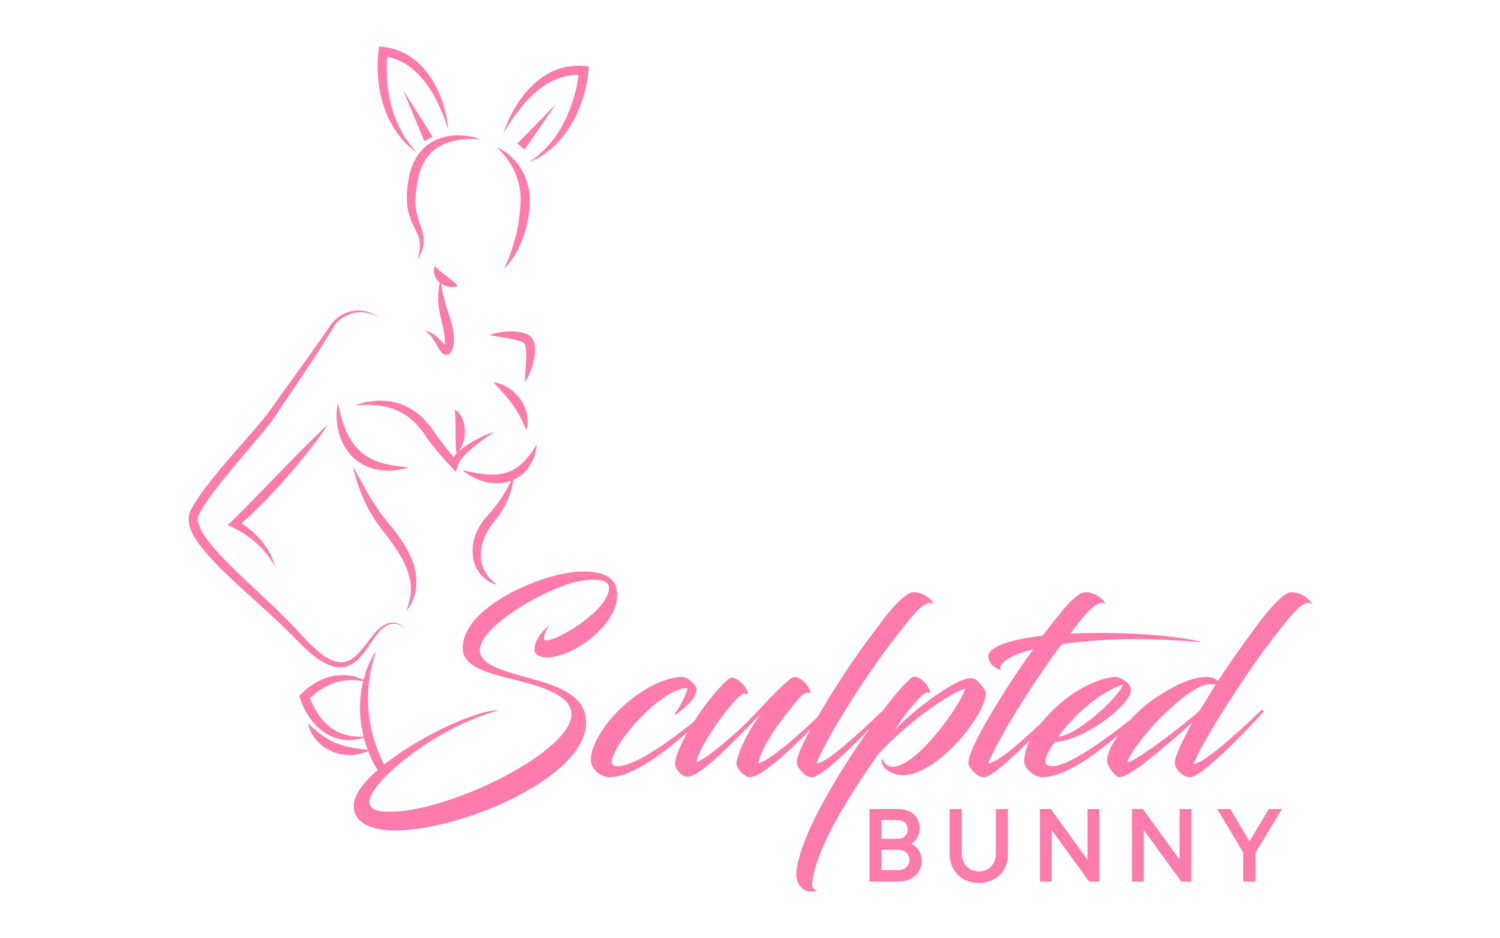 Sculpted Bunny